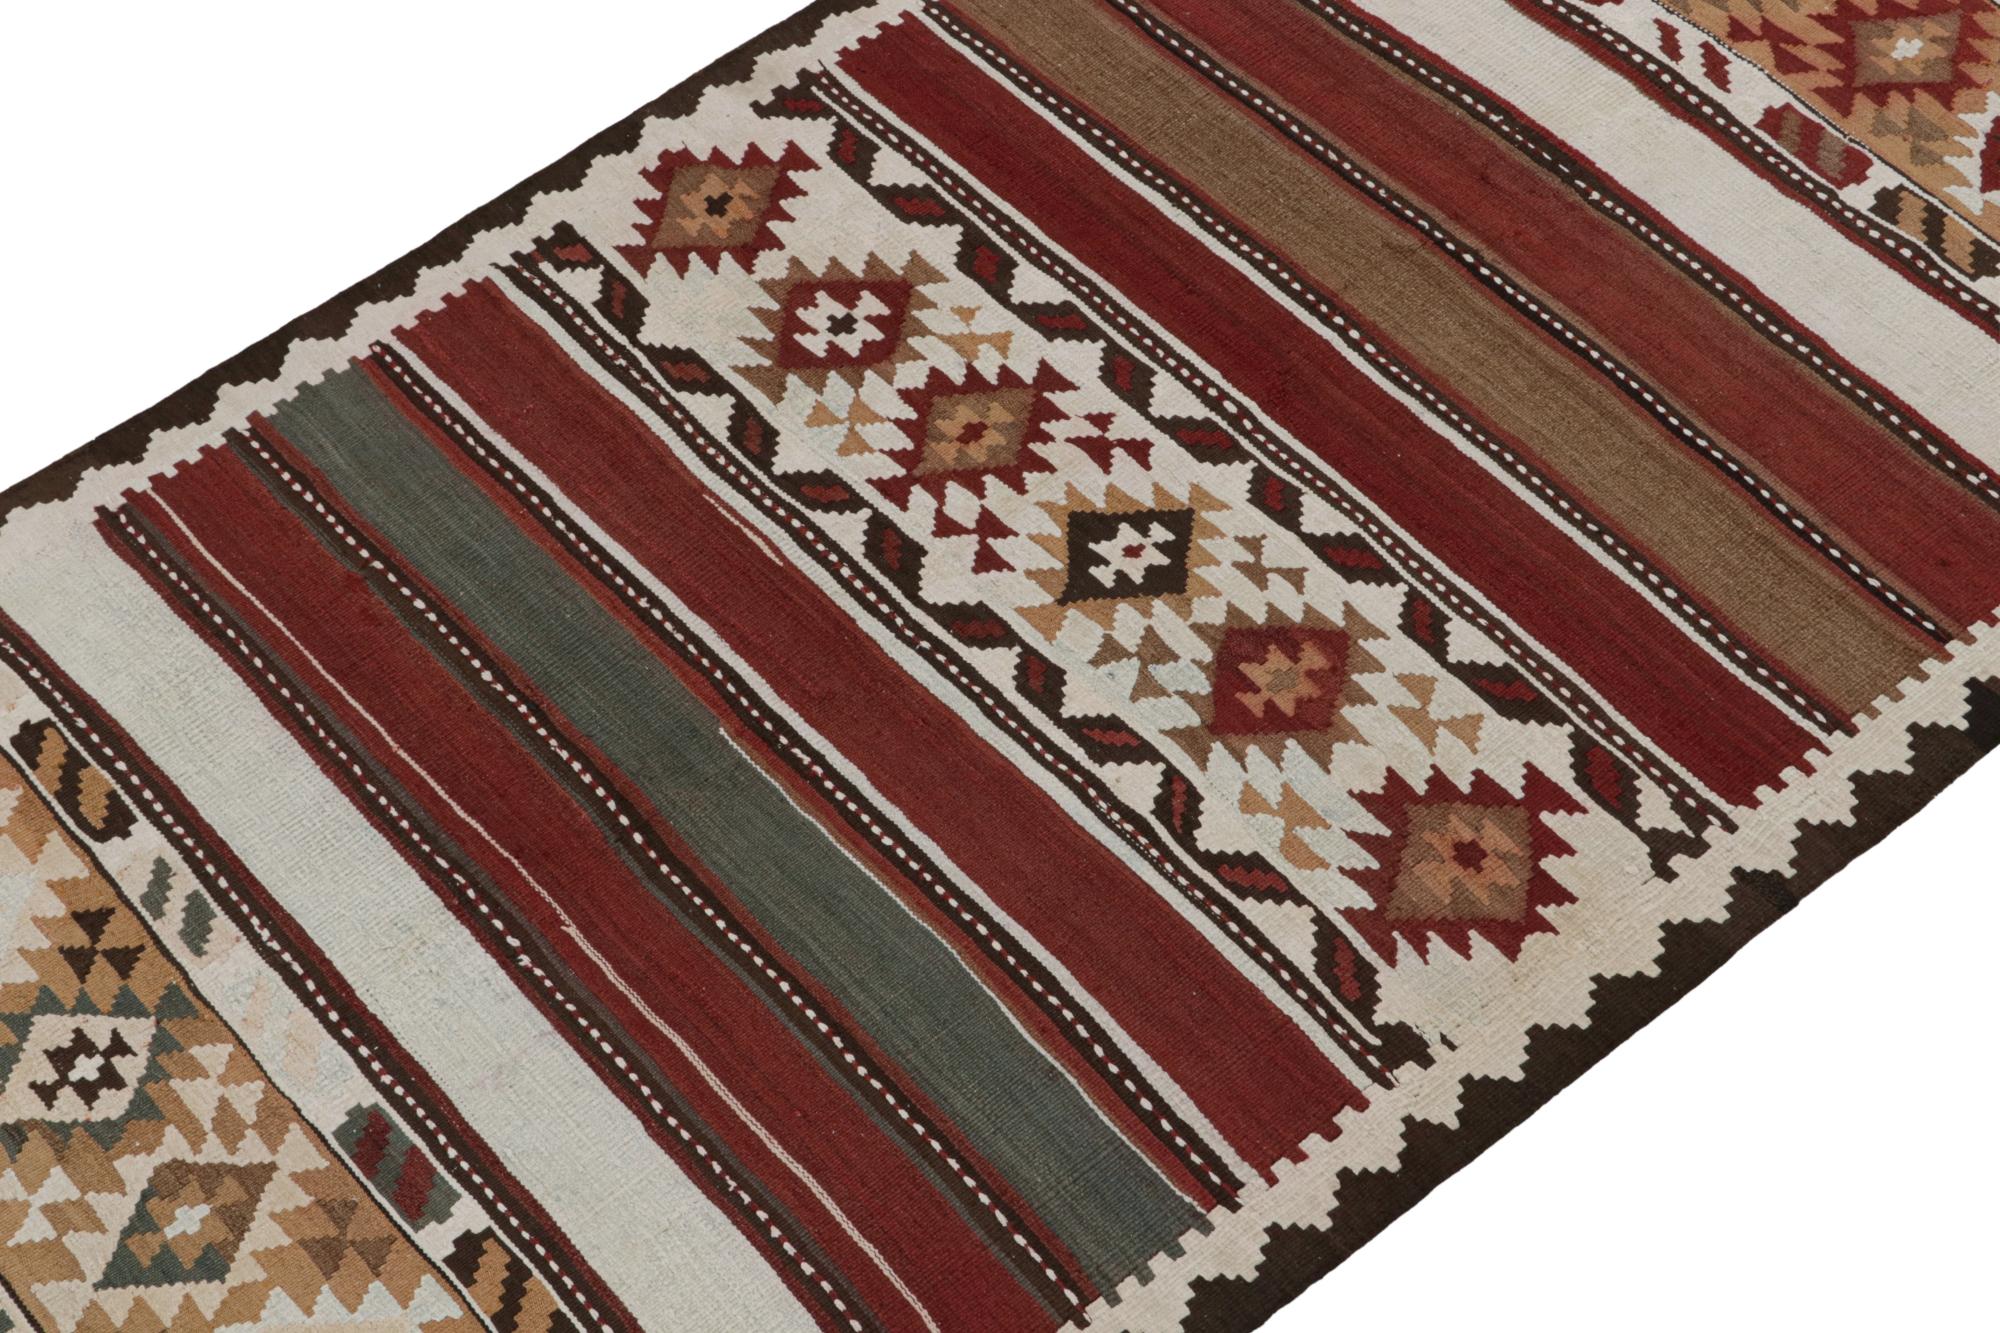 Dieser alte persische Kelim 5x12 ist vermutlich ein Schahsavan-Stammesteppich, der um 1950-1960 in Wolle gewebt wurde.

Über das Design: 

Dieser Läufer besticht durch seine breite Palette an Streifen und geometrischen Mustern in Rost-,